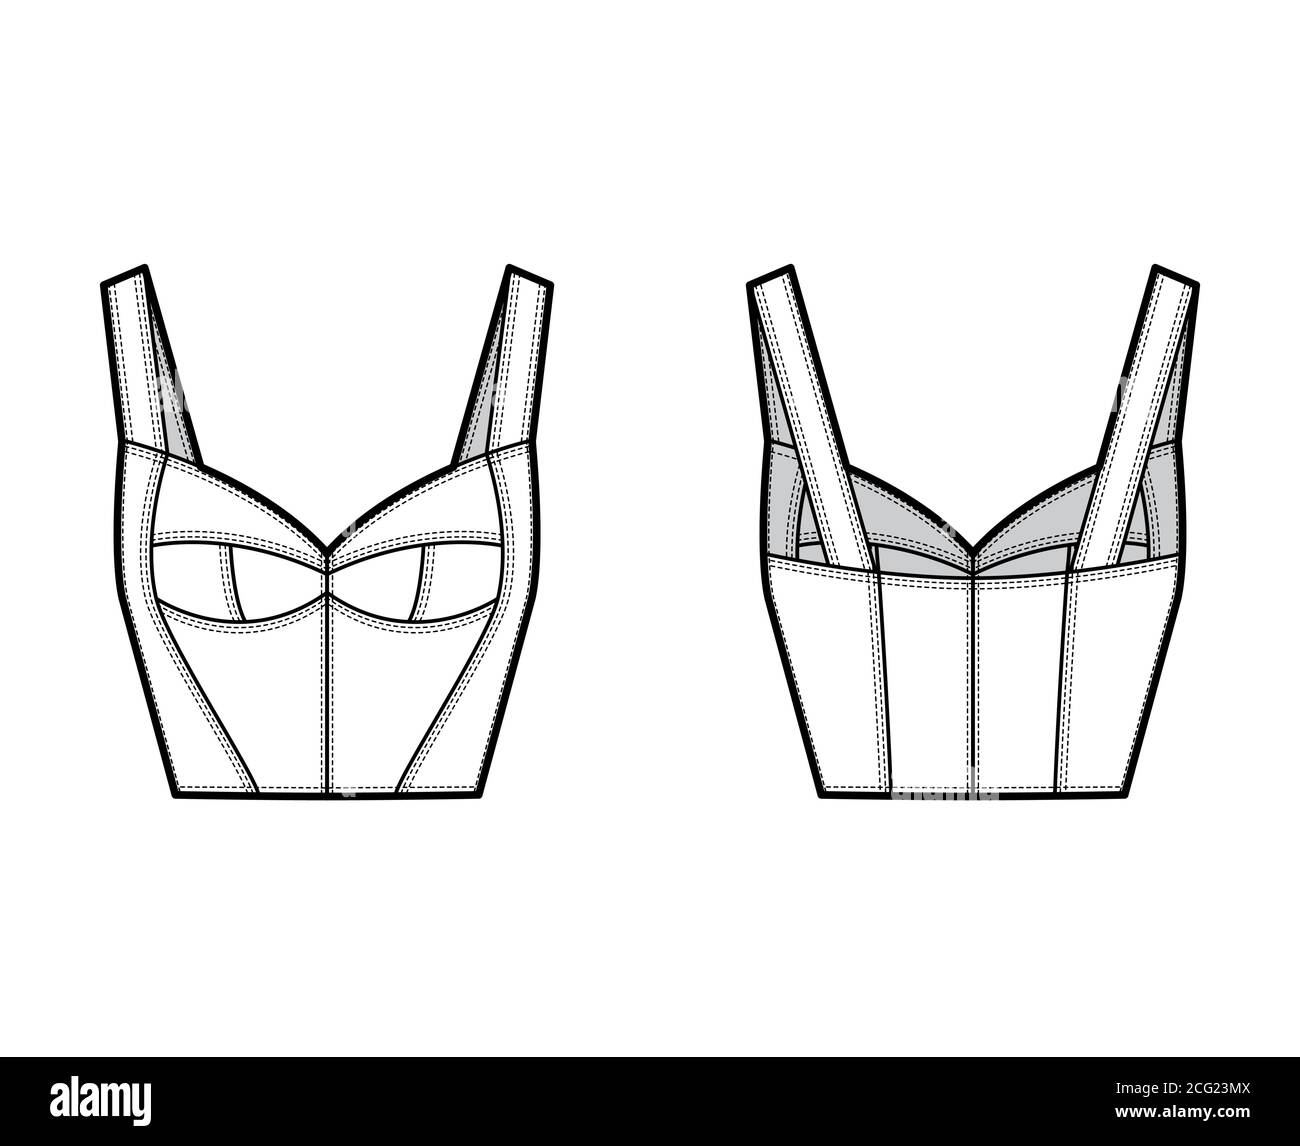 Illustration de mode technique haut de gamme Bustier avec silhouette de  corset, bonnets moulés, coupe ajustée, fermeture à glissière dans le dos.  Modèle de vêtement plat à l'avant, à l'arrière, de couleur